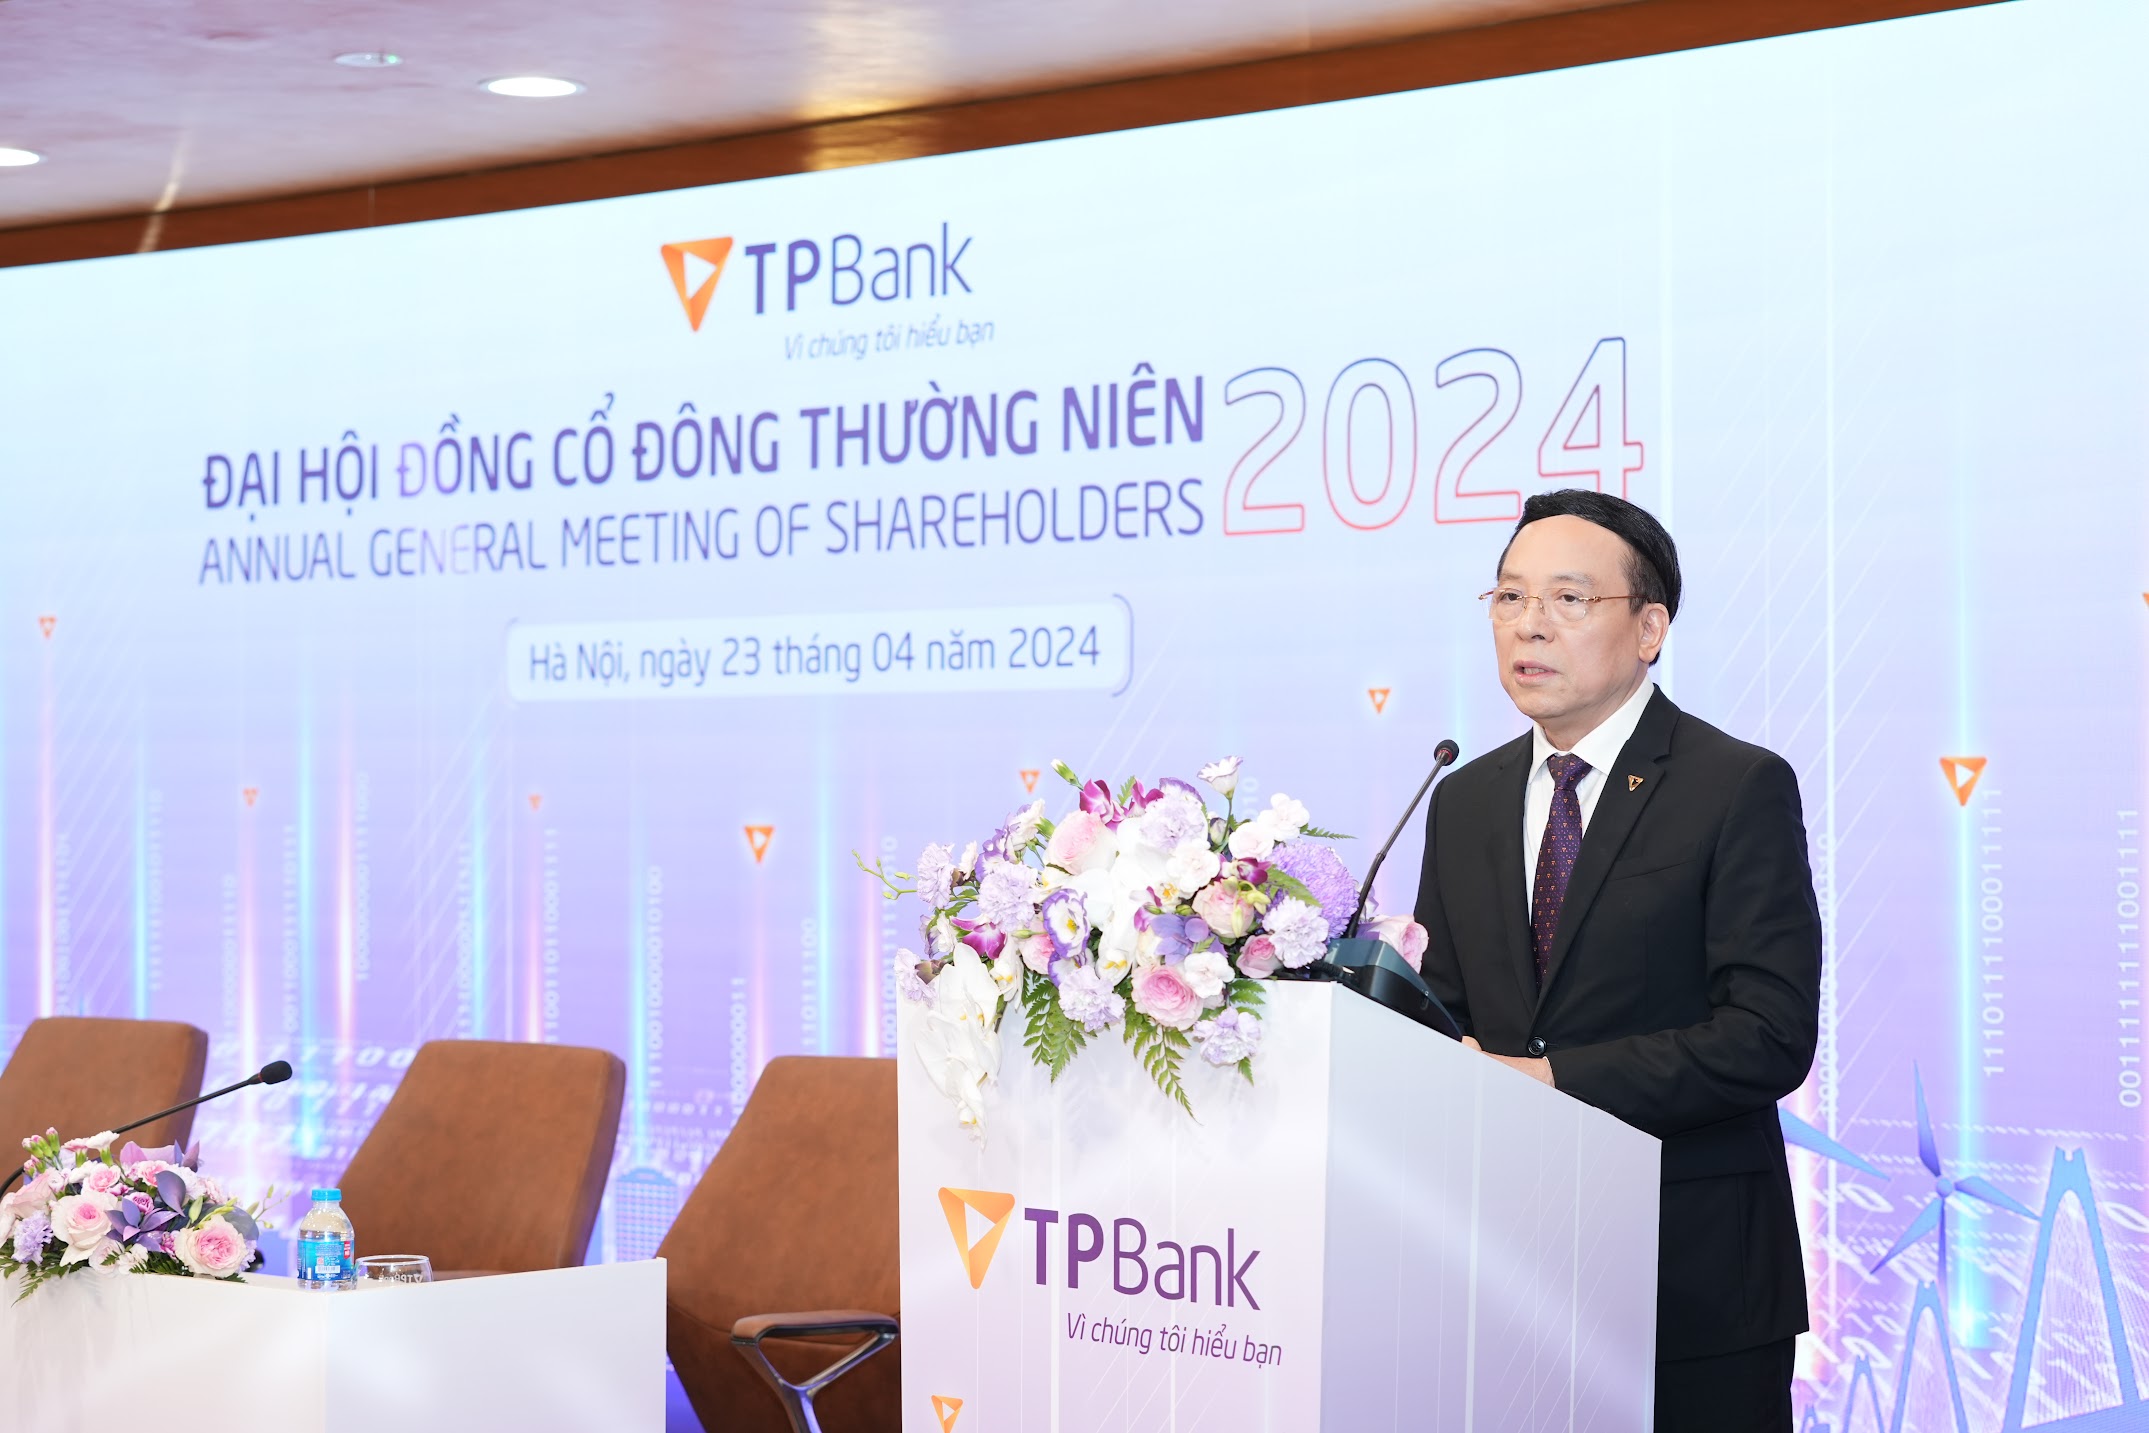 TPBank bất ngờ công bố kế hoạch chia cổ tức 25% bằng tiền và cổ phiếu tại Đại hội cổ đông- Ảnh 1.